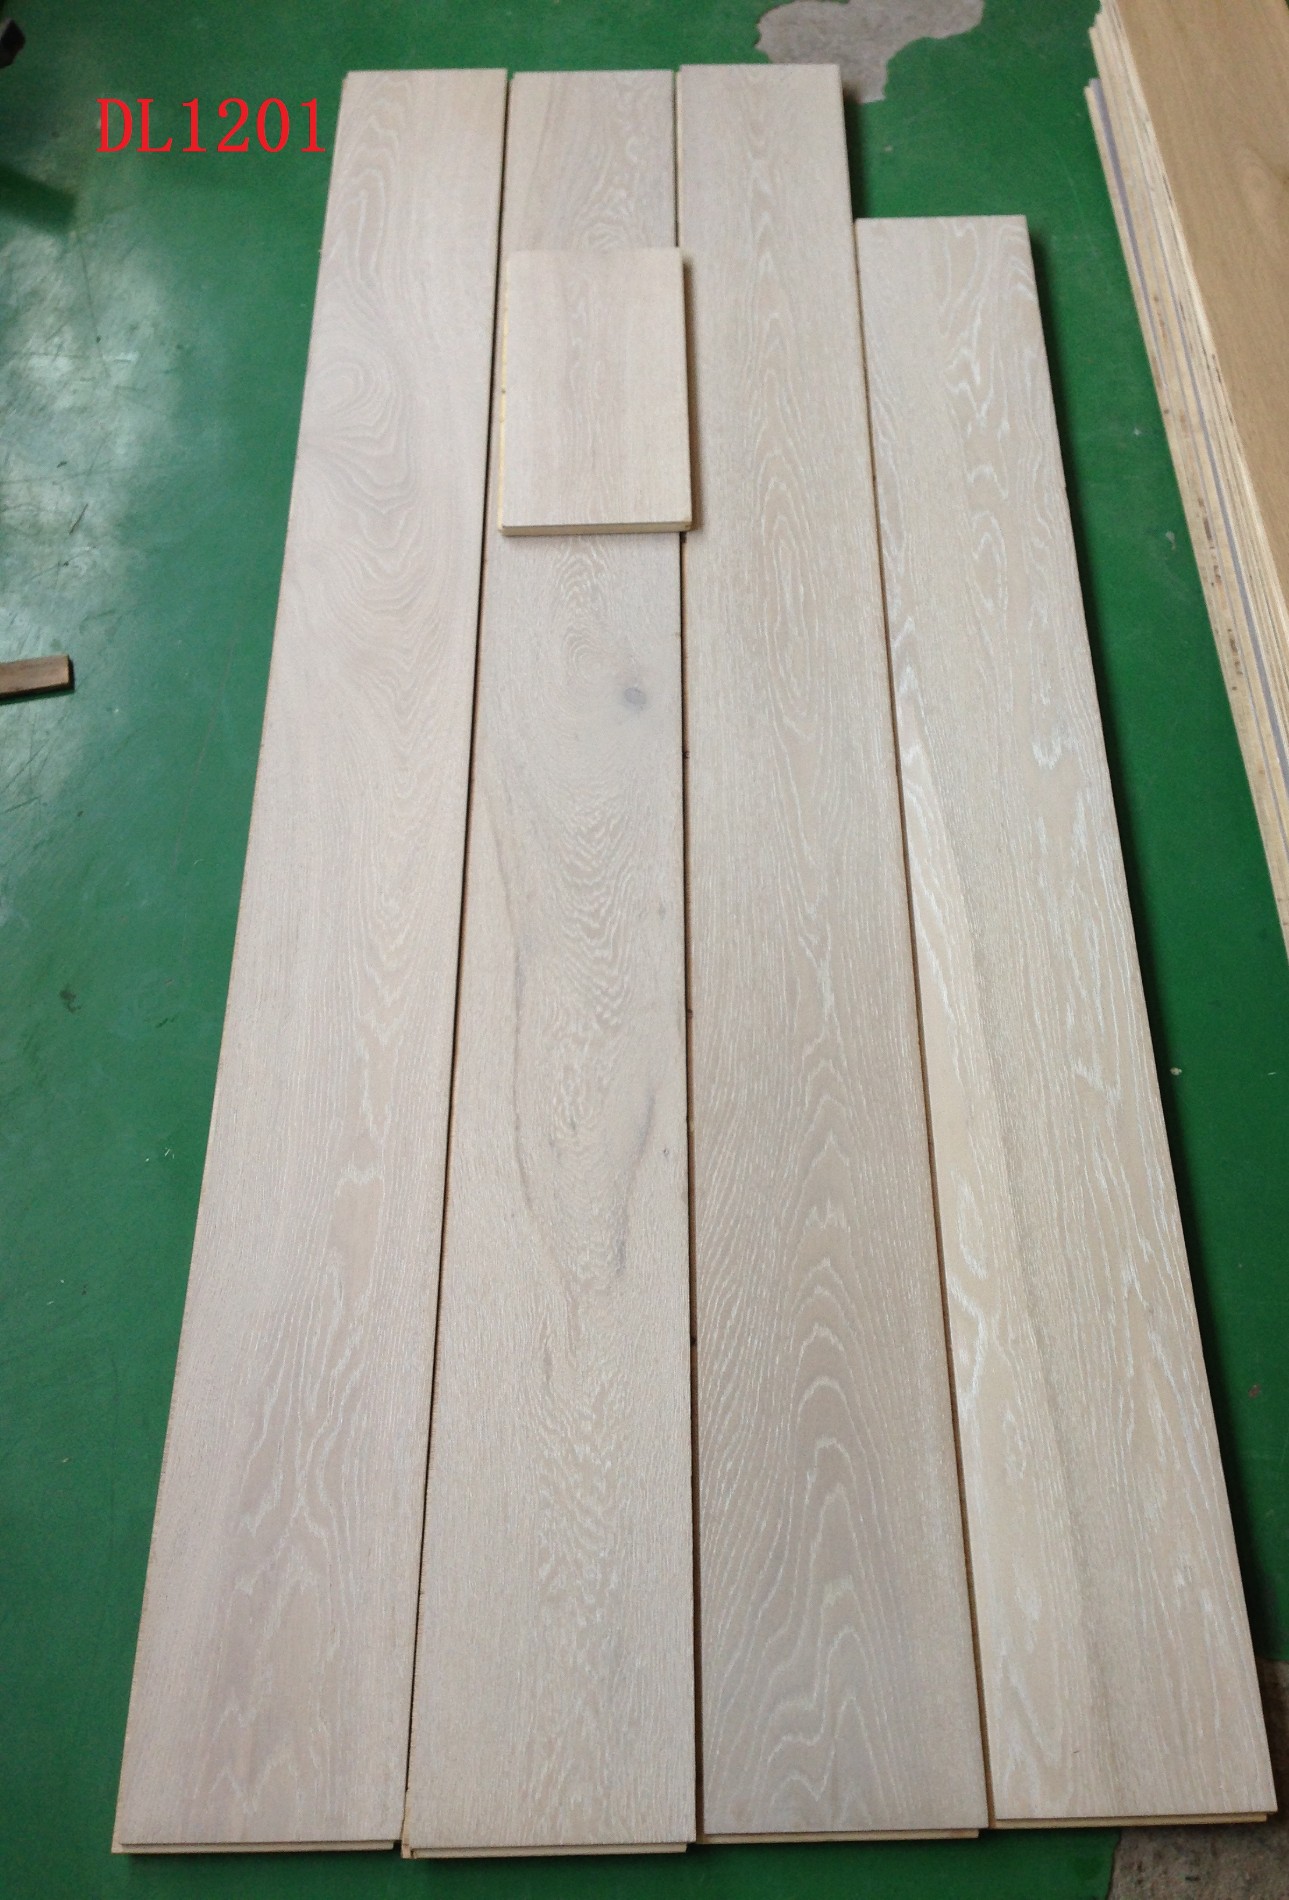 Oak White Wash White Lacquered Hardwood Flooring